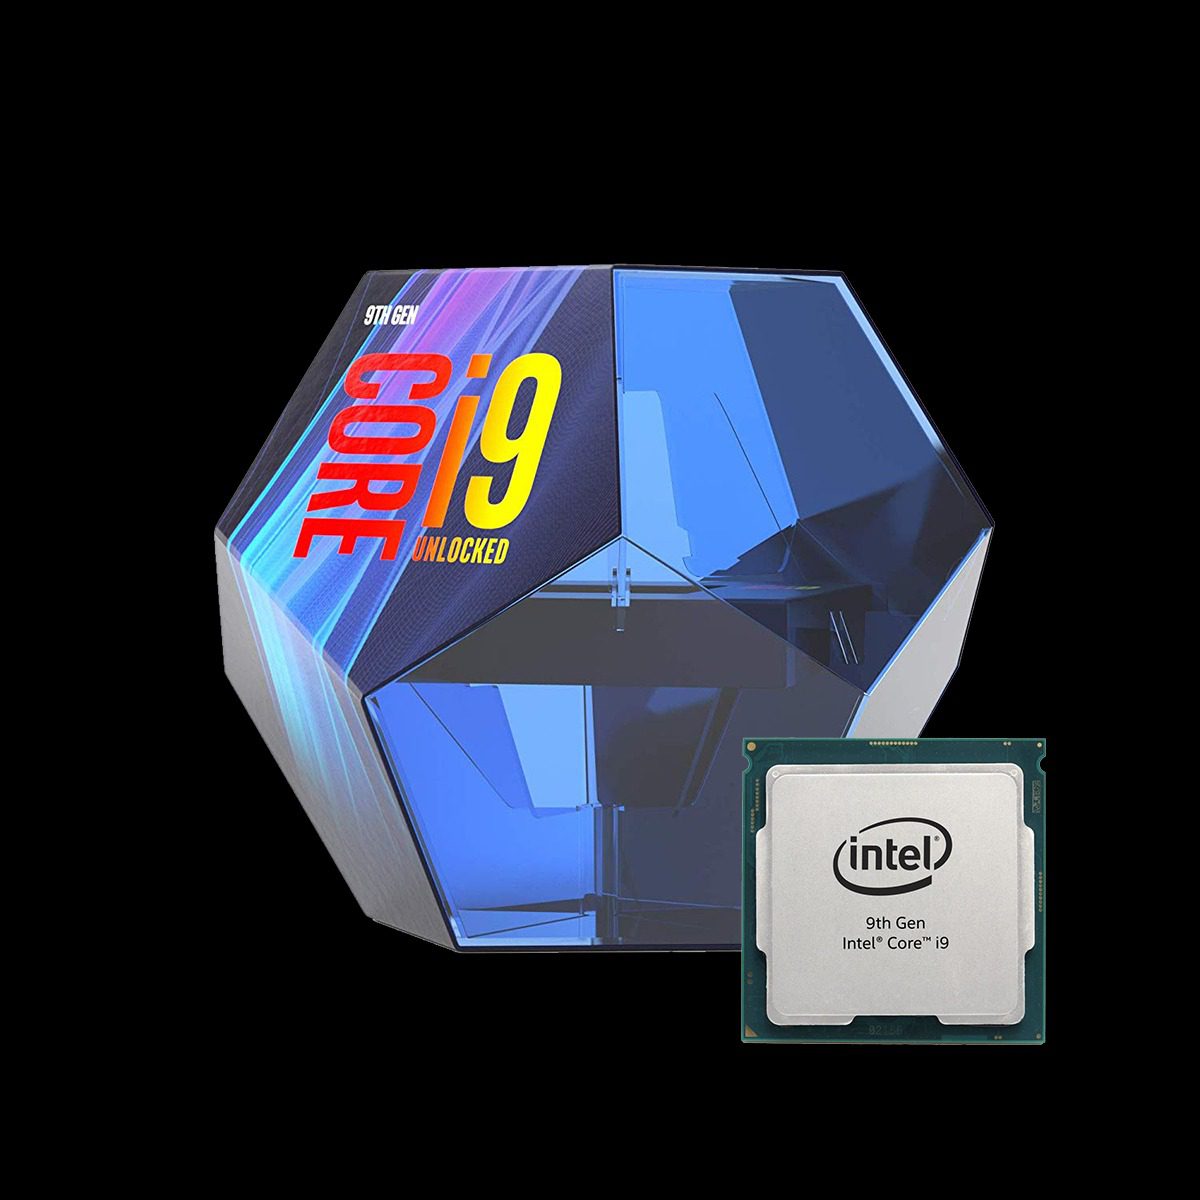 Intel Core i9-9900K Octa-core CPU - CuttingEdgeGamer LLC